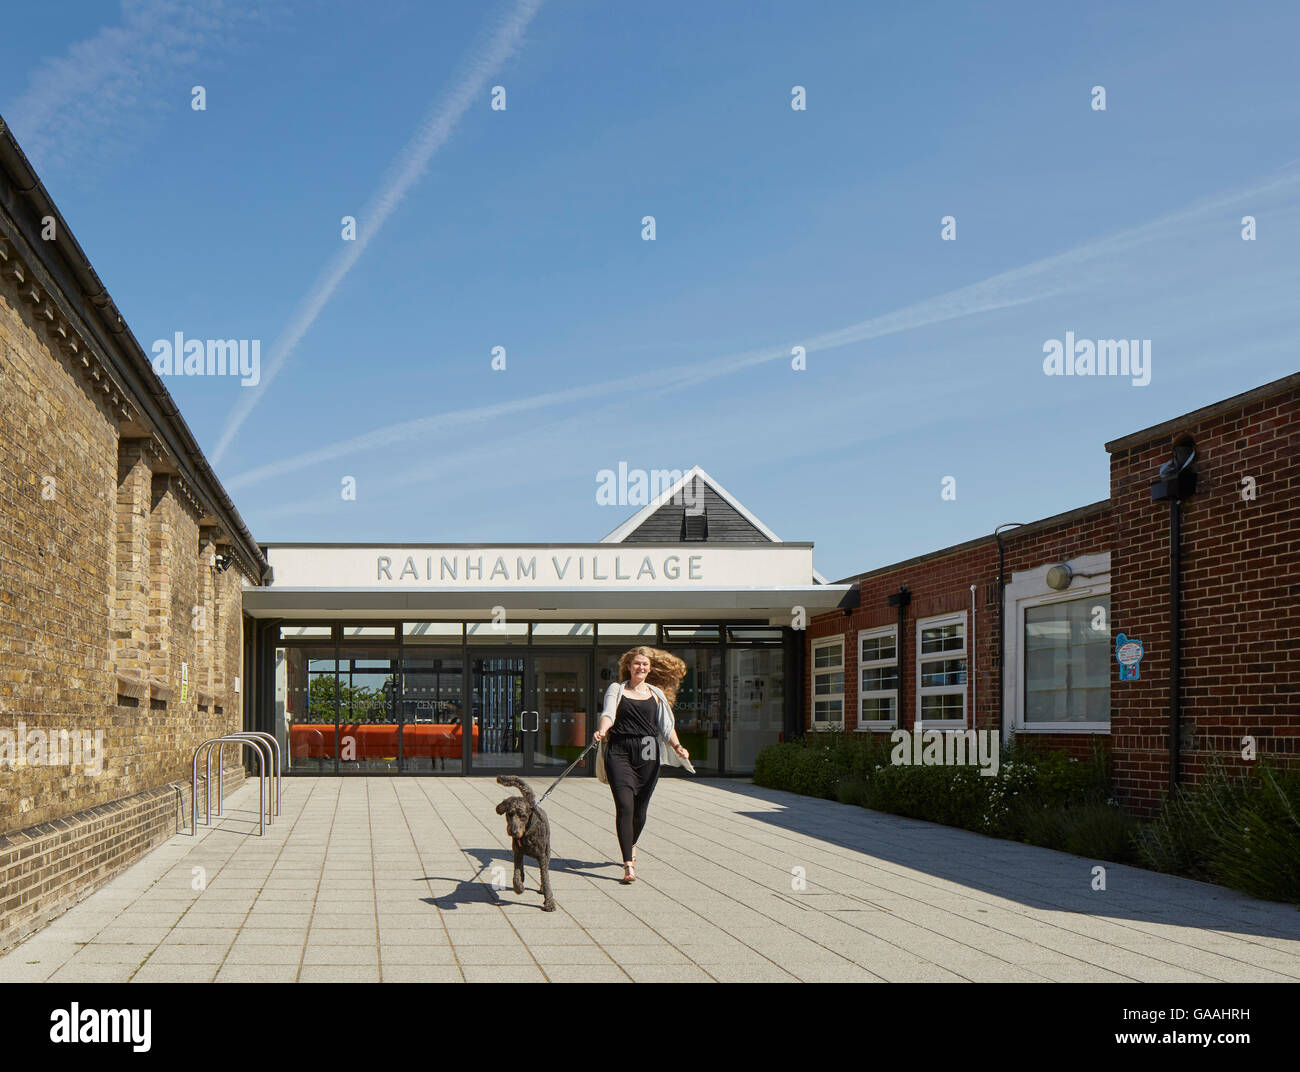 Zone d'arrivée avec la réception en retrait. L'école primaire du village de Rainham, Rainham, Royaume-Uni. Architecte : Walters et Cohen Ltd, 2015. Banque D'Images